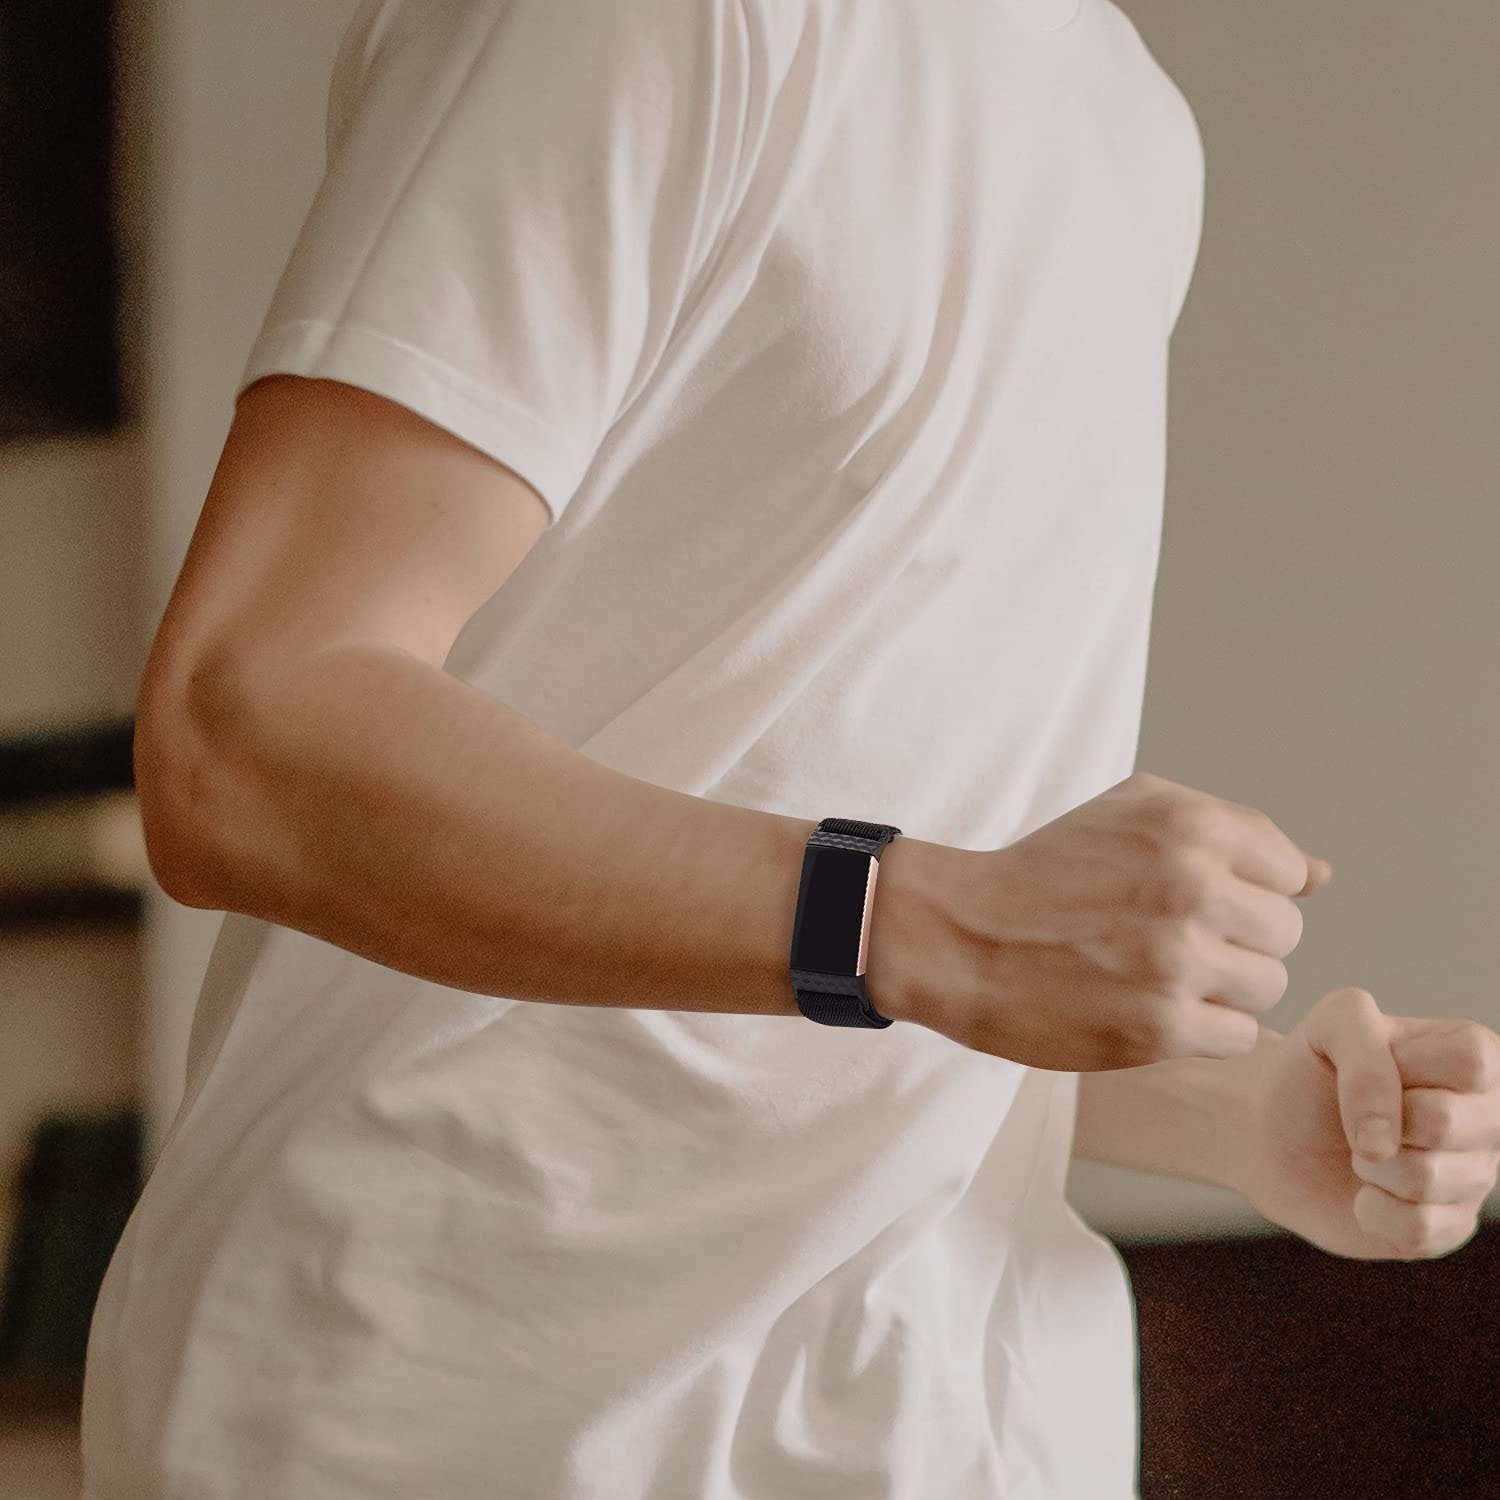 Armband Charge pfeil zggzerg Kompatibel Elastische Schwarz+Grüner für Stück 2 Uhrenarmband Fitbit